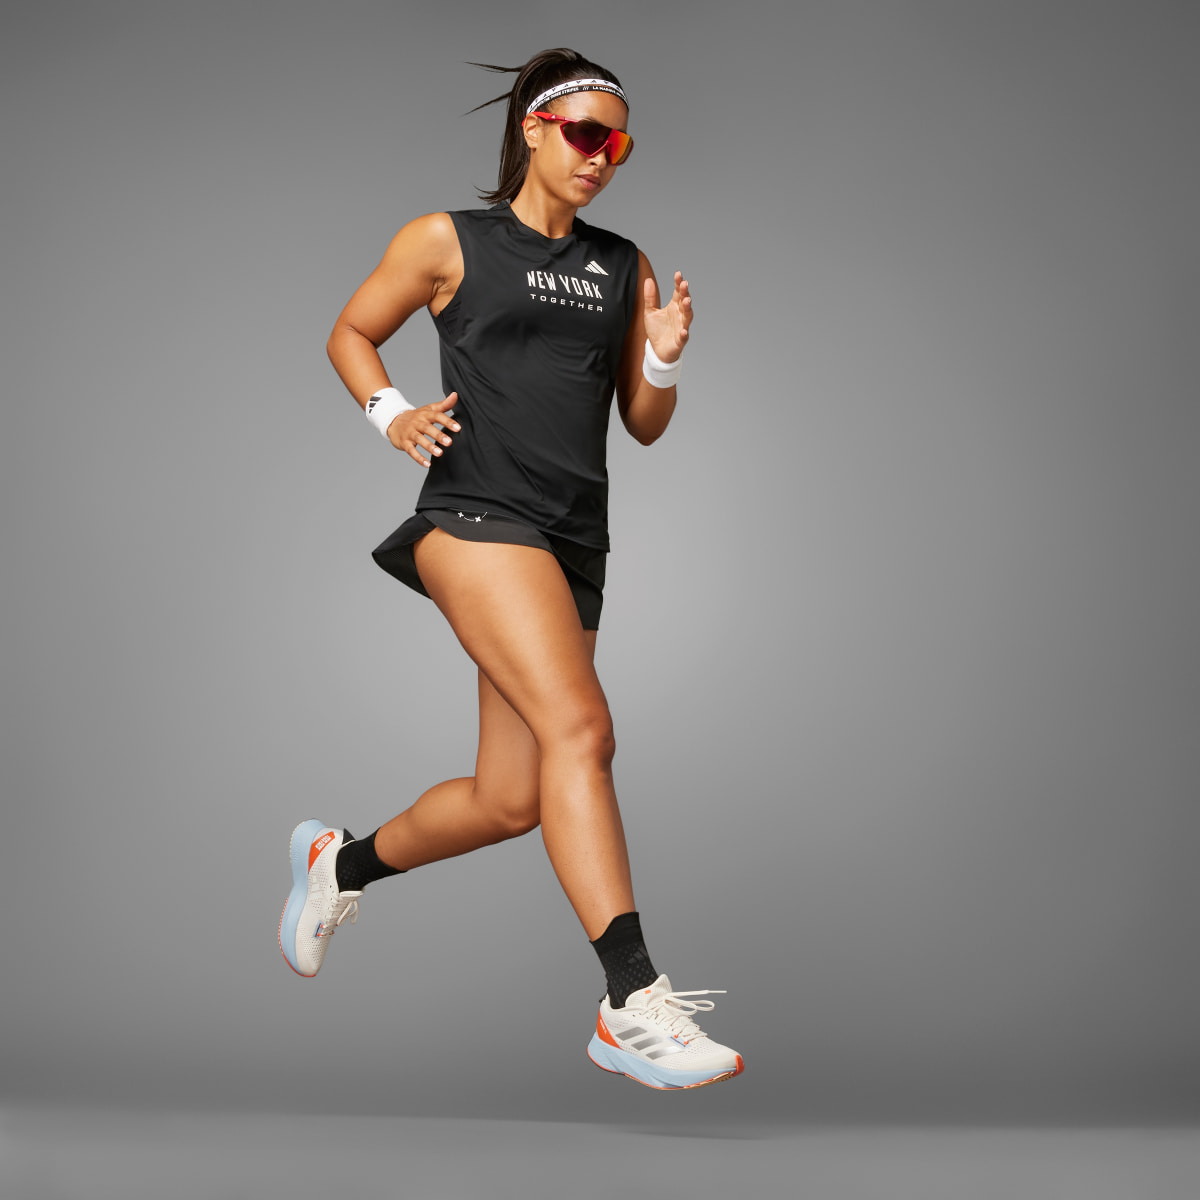 Adidas NYC Running Singlet (Gender Neutral). 4